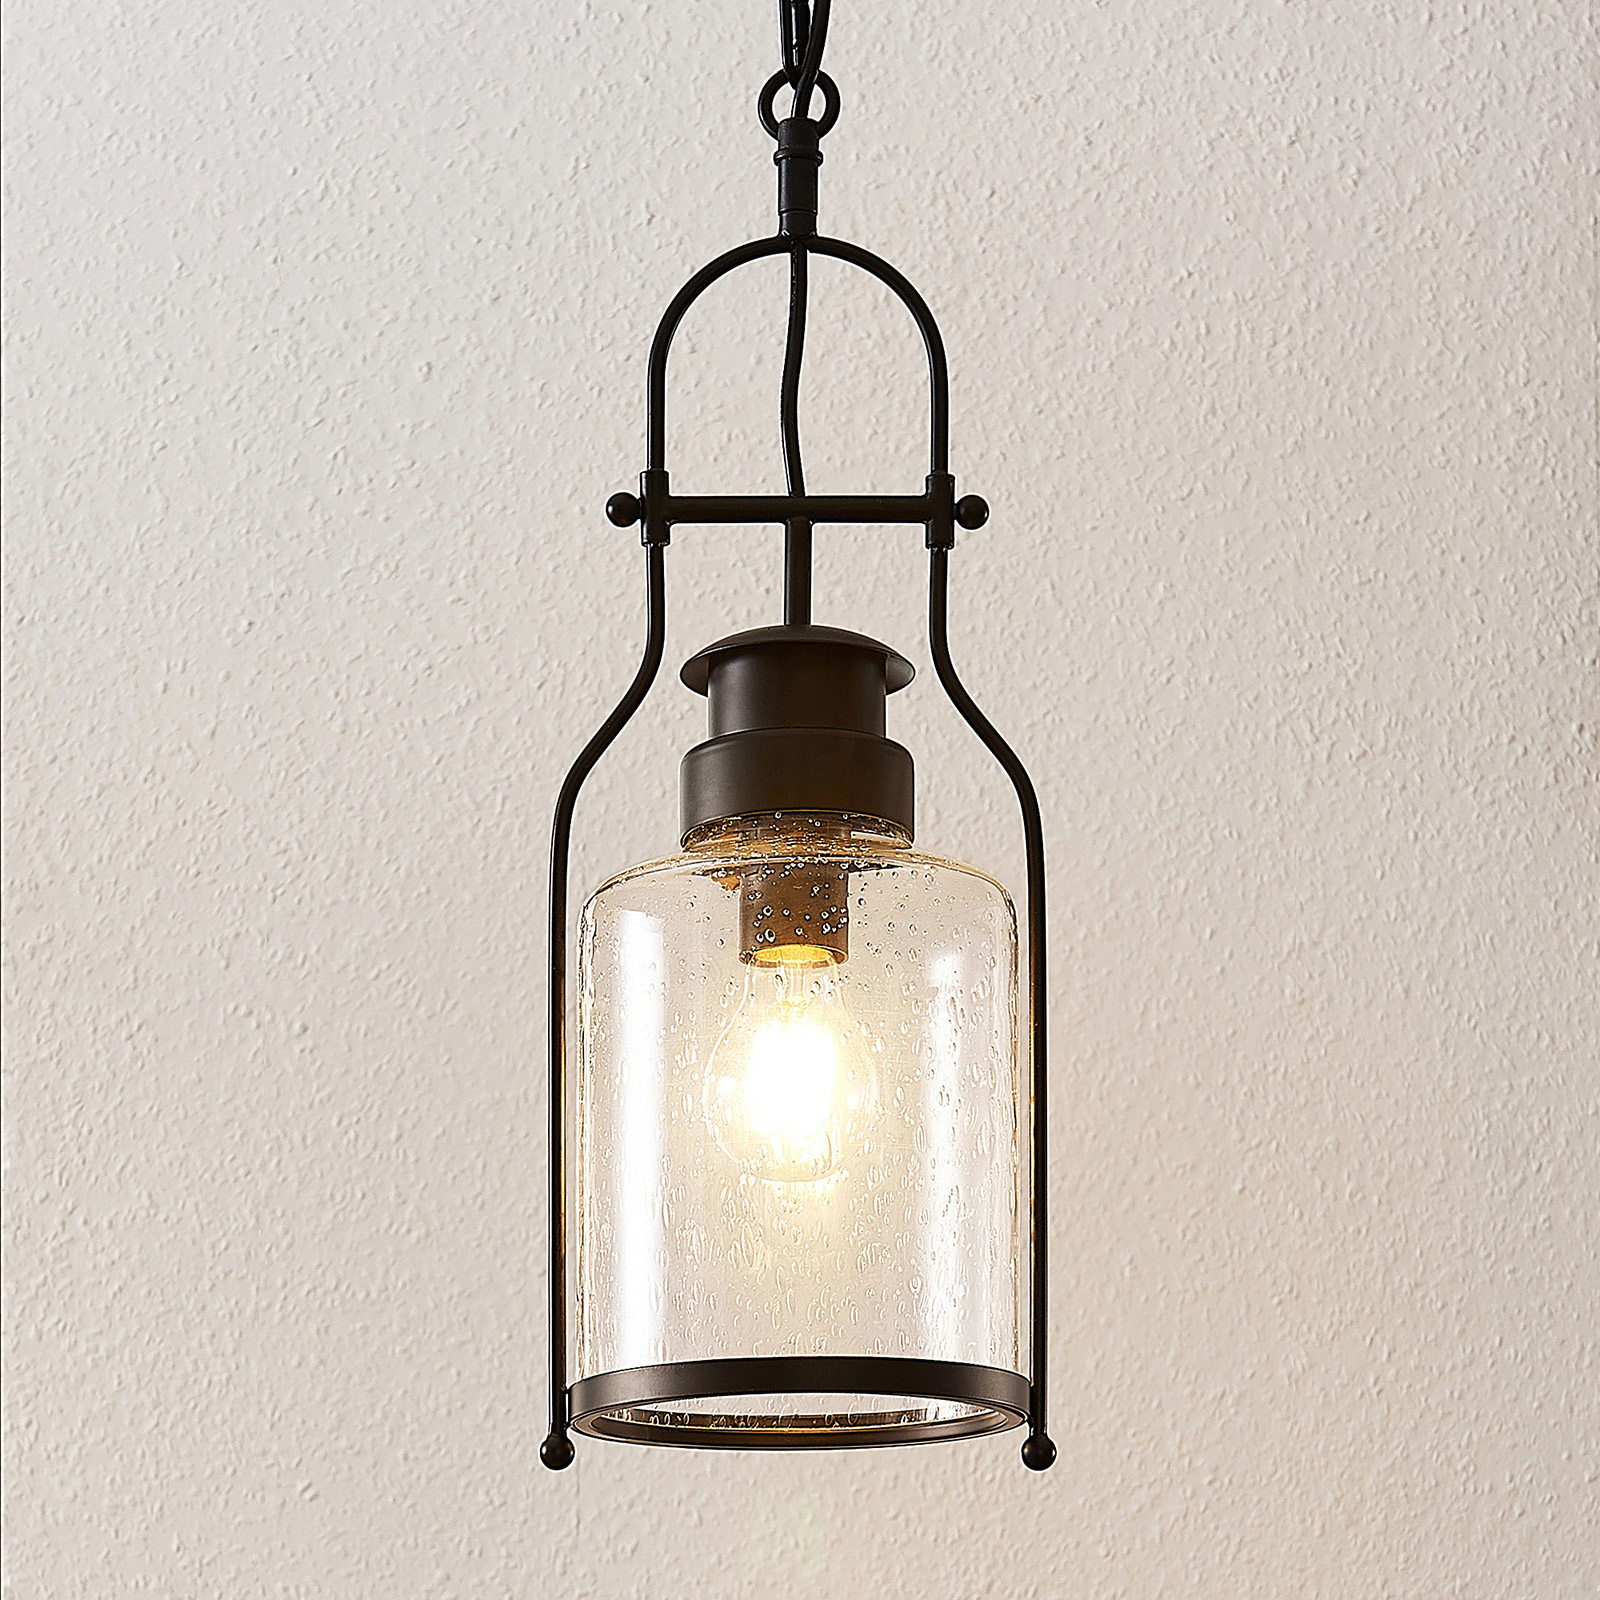 Lindby Rozalie hanging lamp, lantern, black